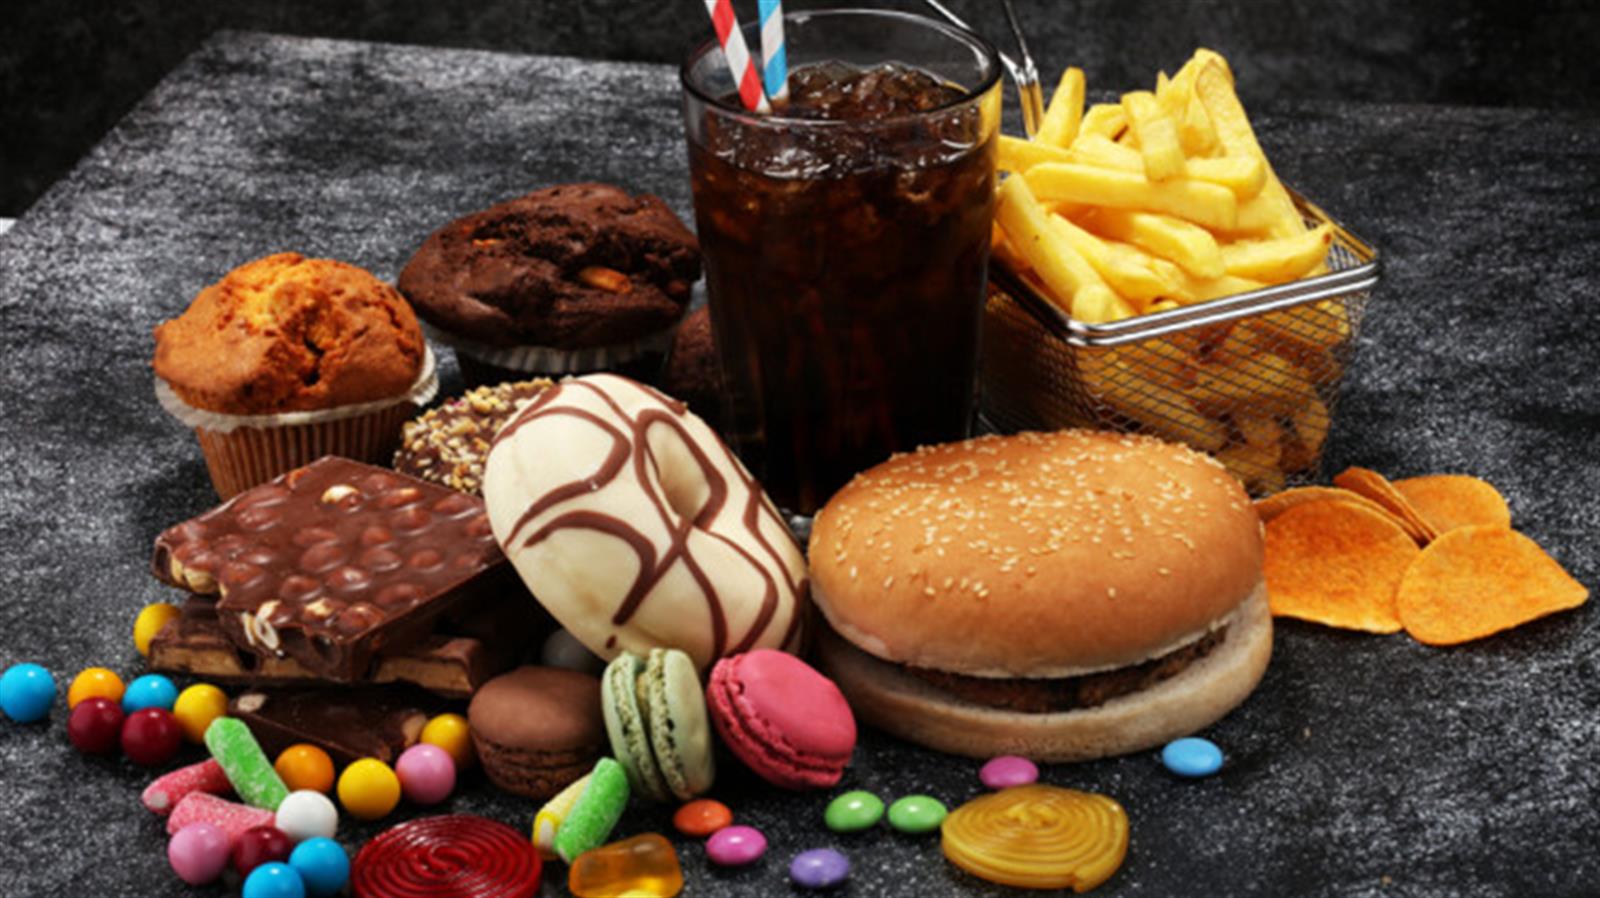 研究: 憂鬱症患者要避免吃「超加工食品」 吃太多恐致情緒失控、易怒、不理智